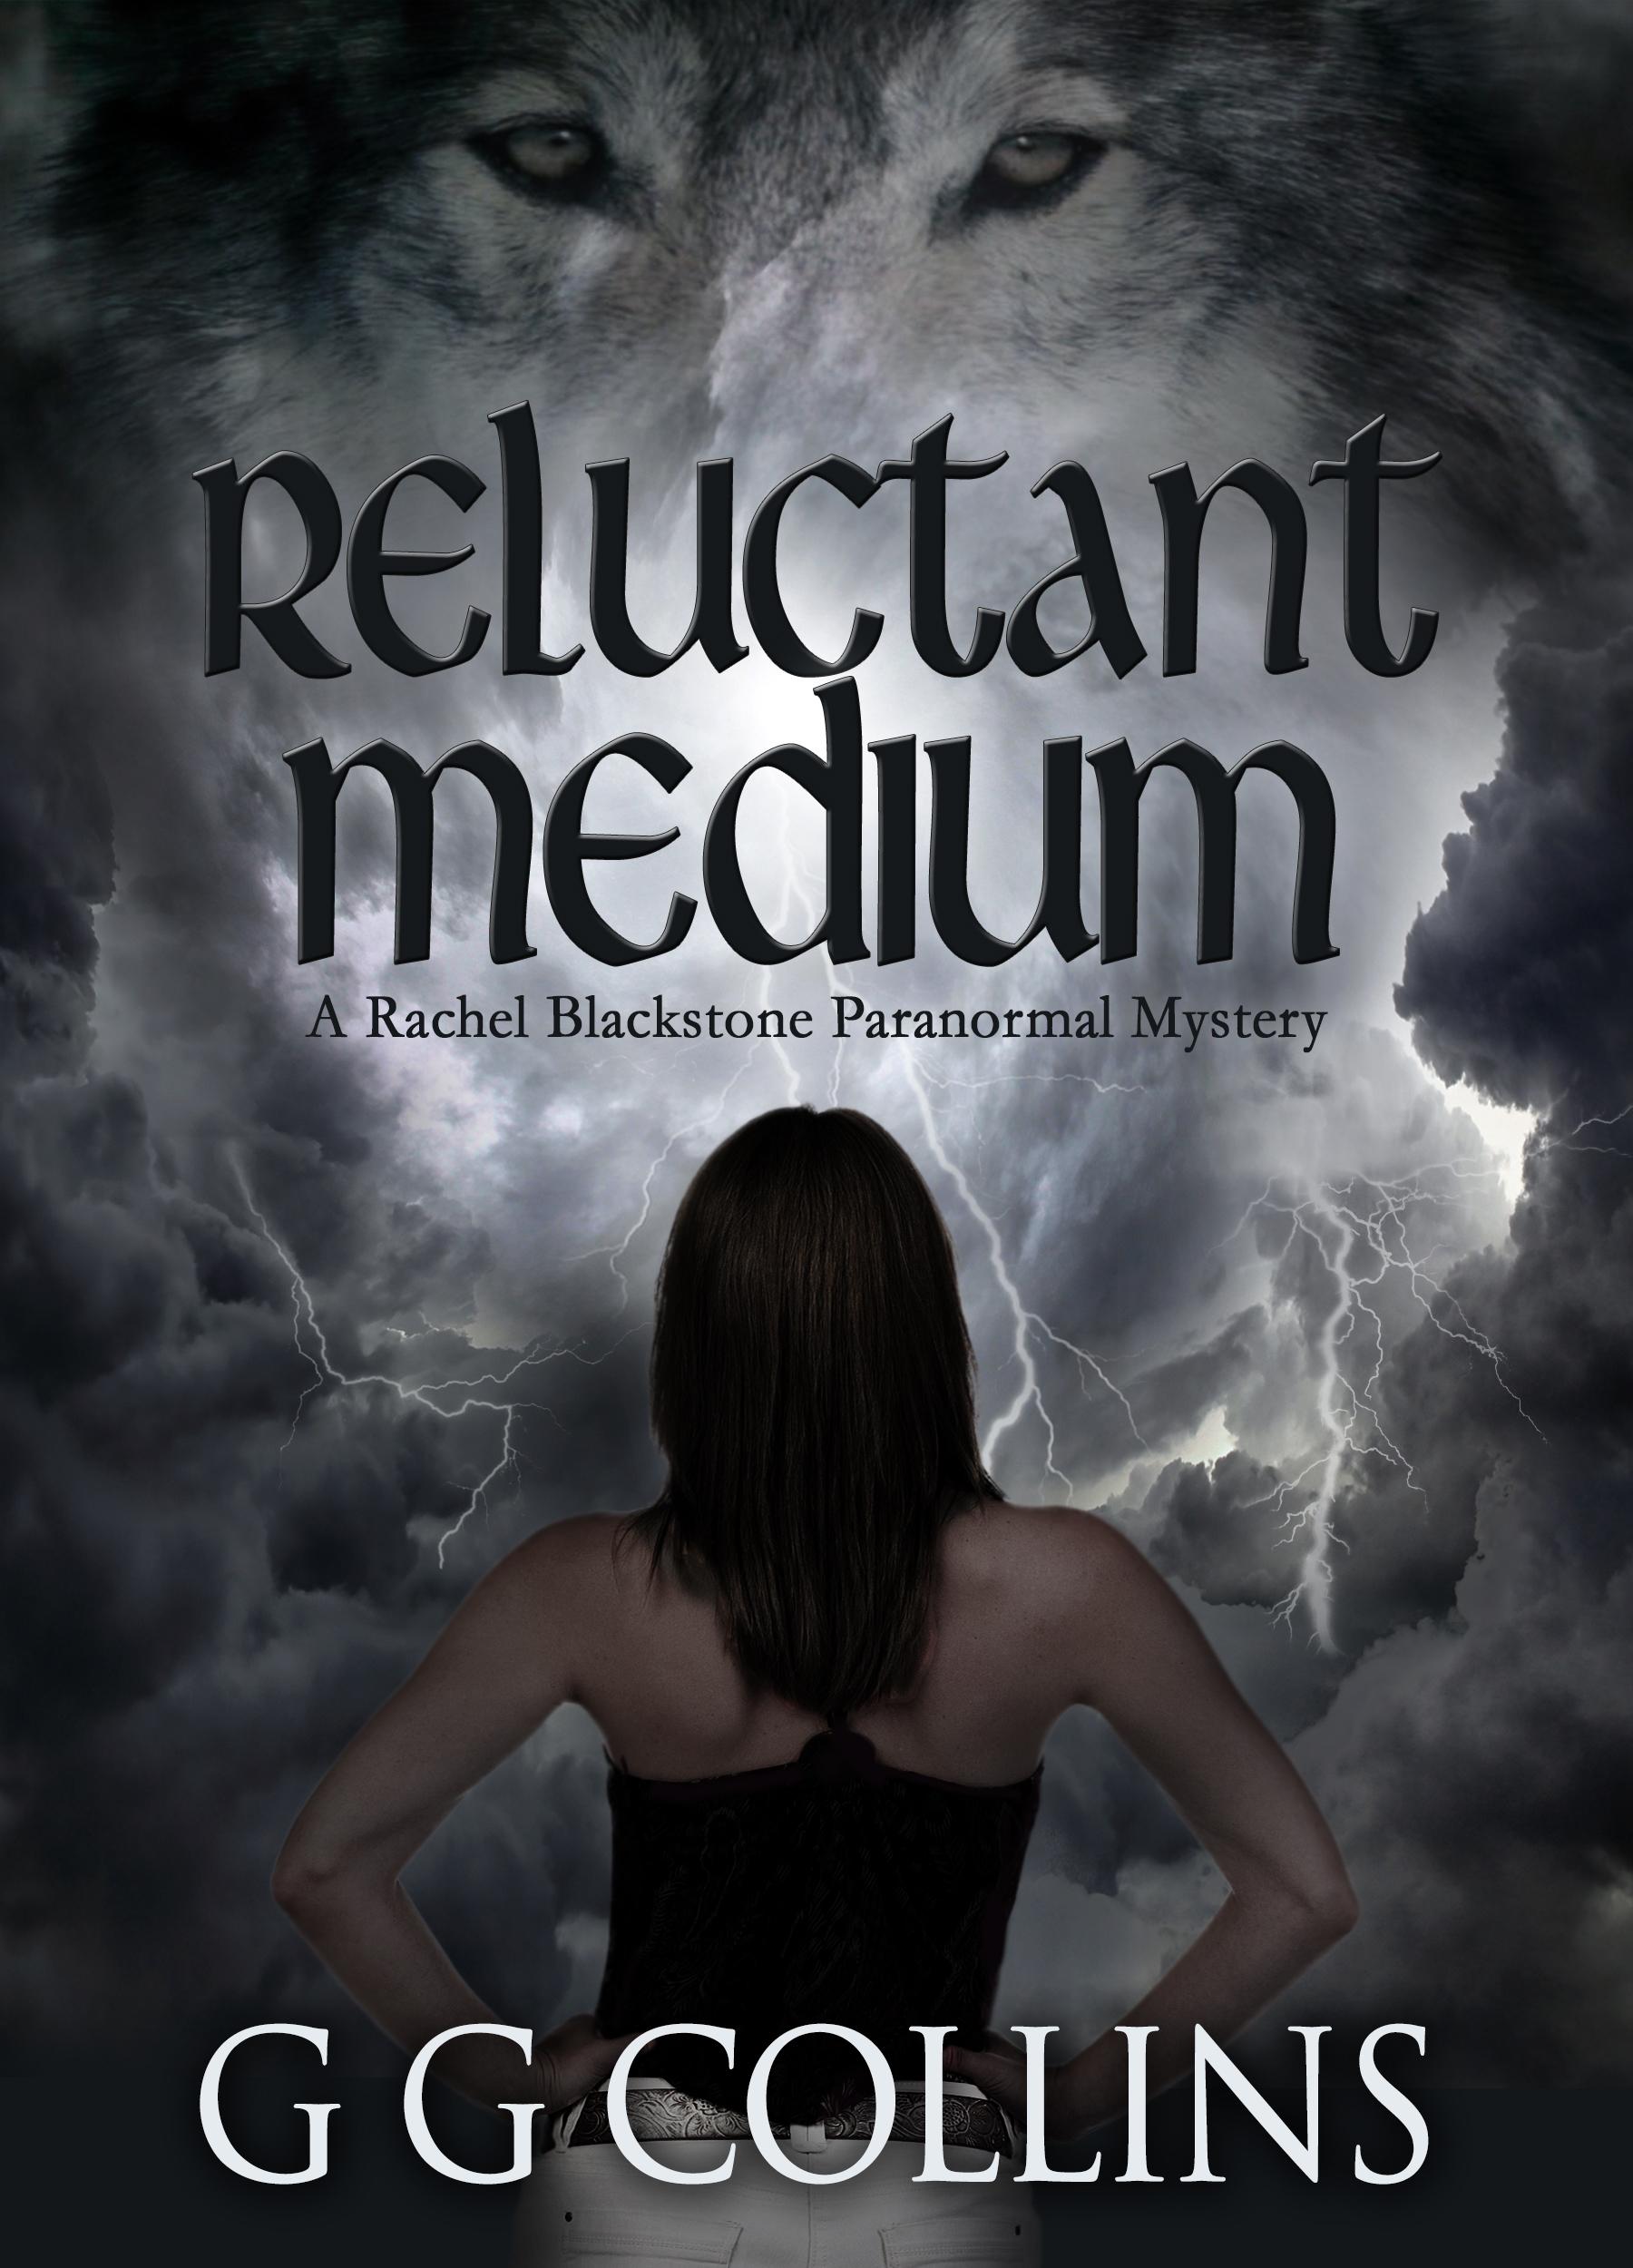 Reluctant Medium